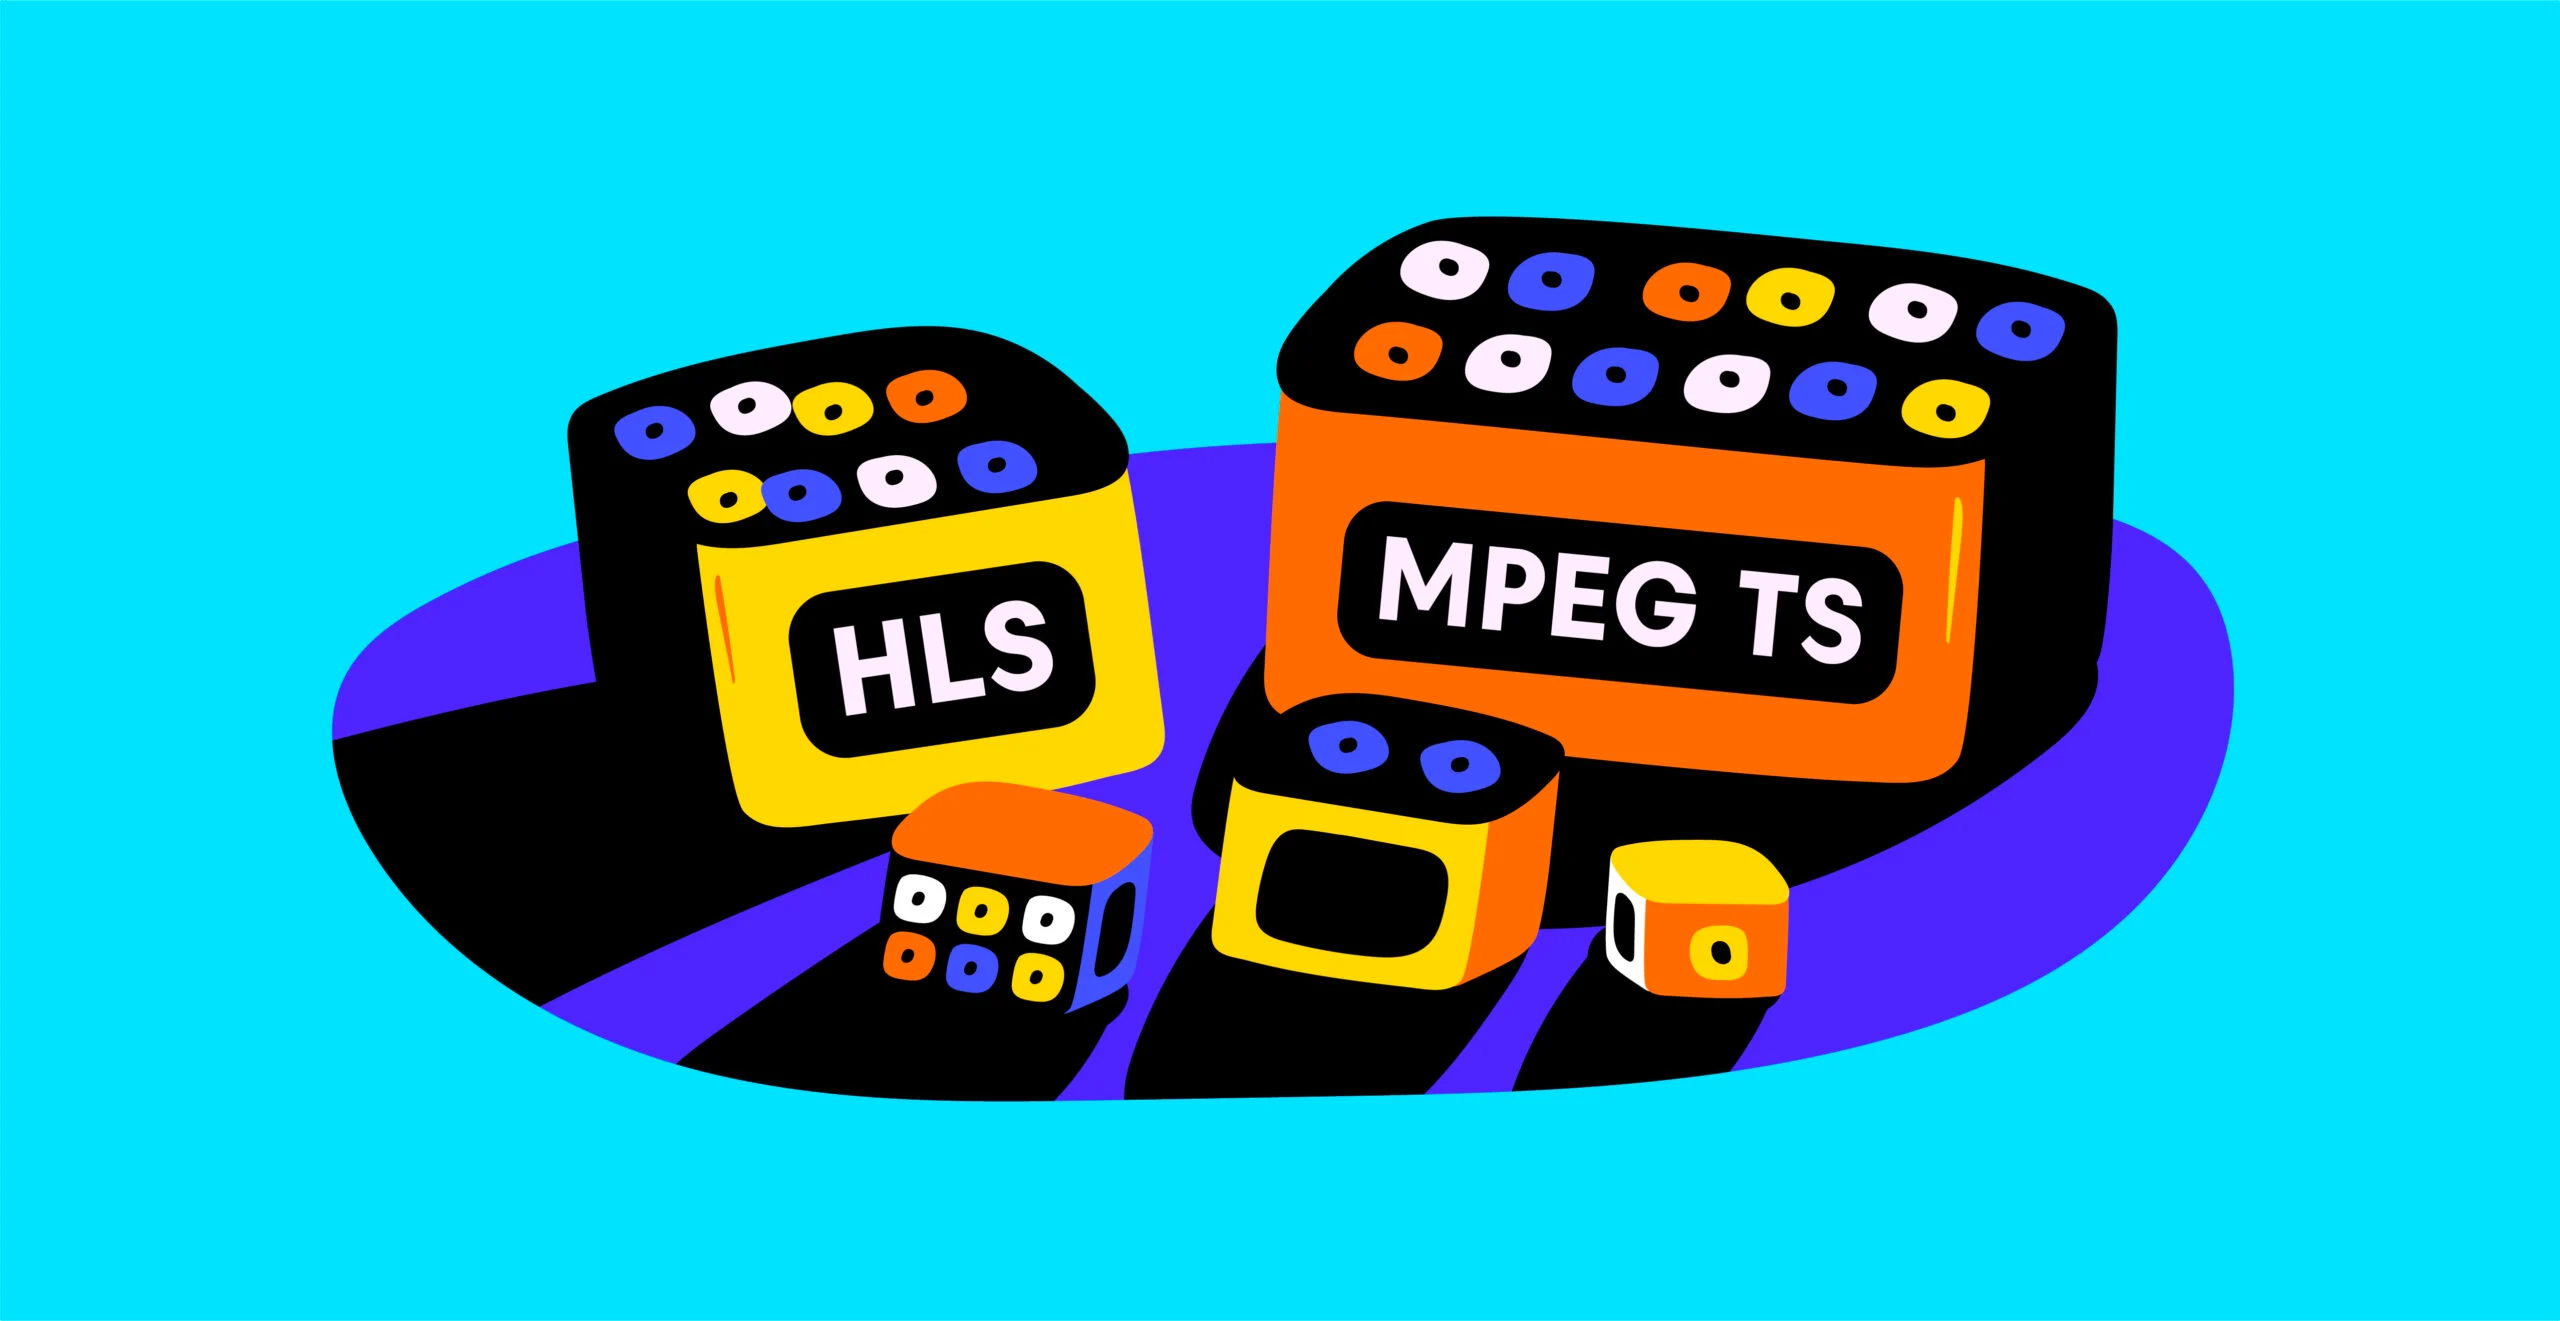 什么是MPEG TS 与 HLS？MPEG TS 与 HLS的区别